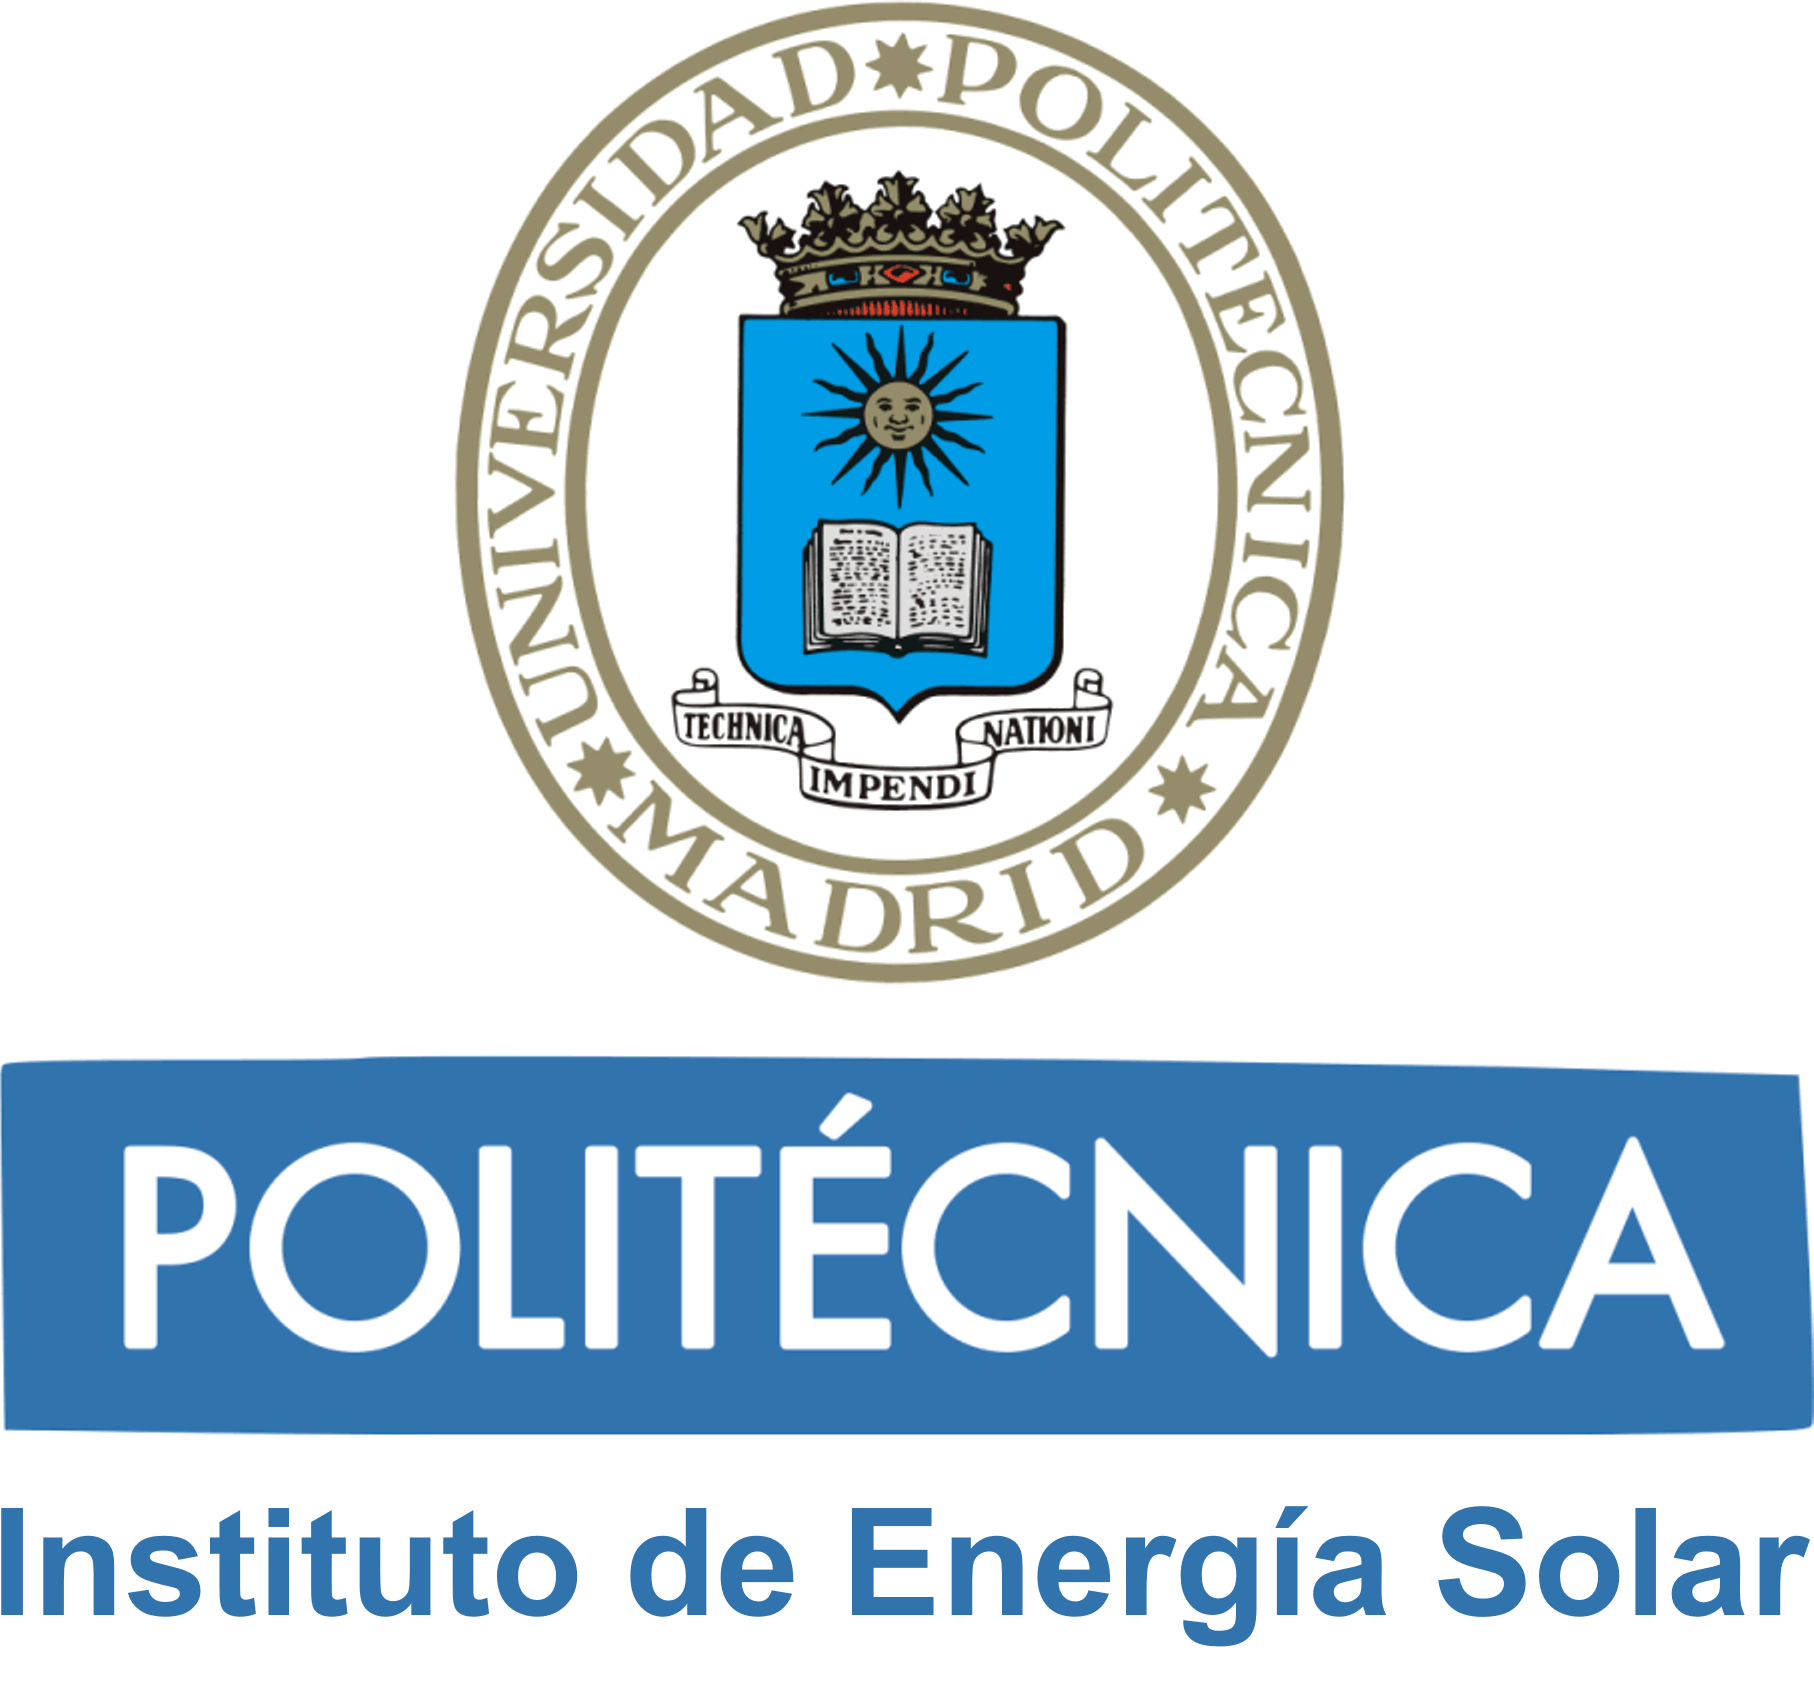 INSTITUTO DE ENERGIA SOLAR